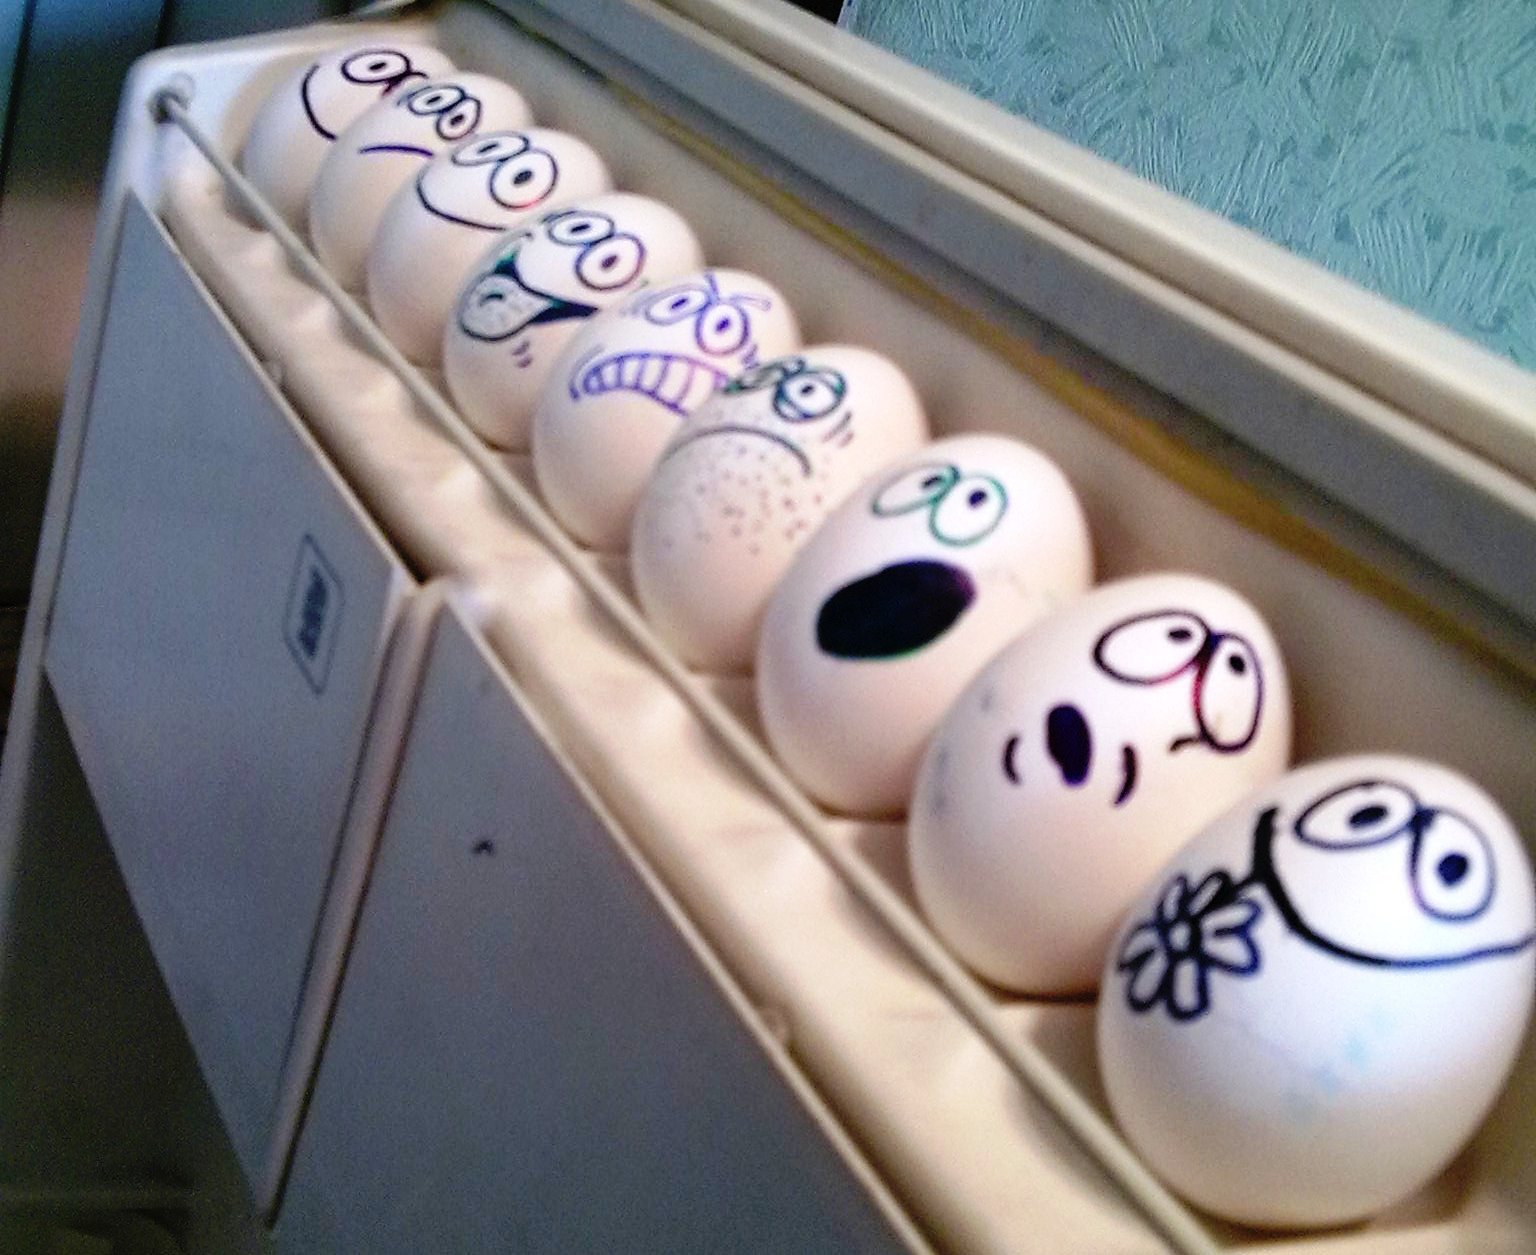 Глупые яйца. Прикольные пасхальные яйца. Разрисованные яйца смешные. Смешно Раскрашенные яйца. Прикольные яйца.